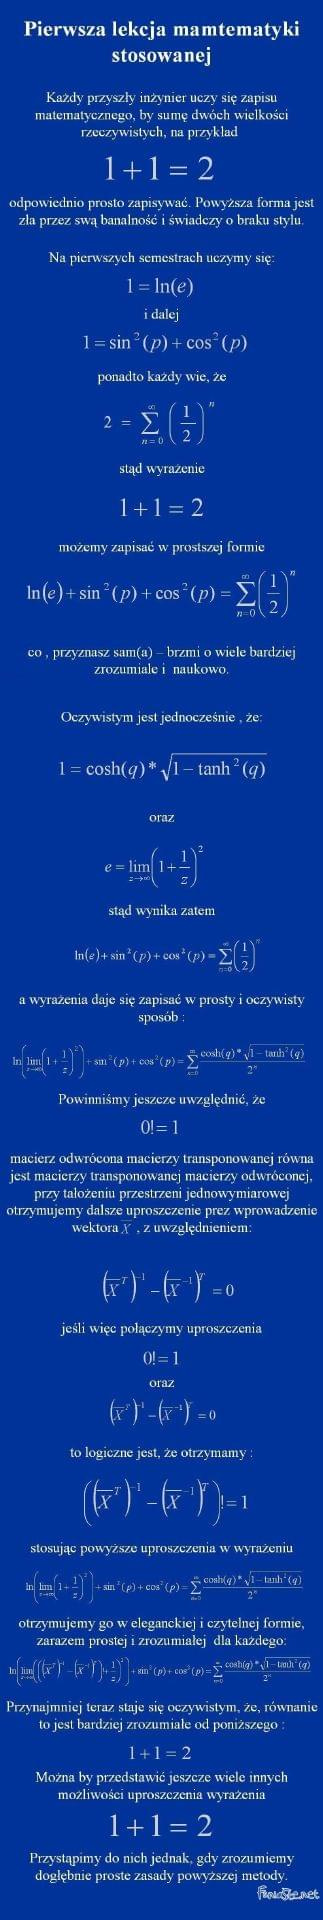 Łopatologiczne uproszczenie banalnego równania #matematyka #lol